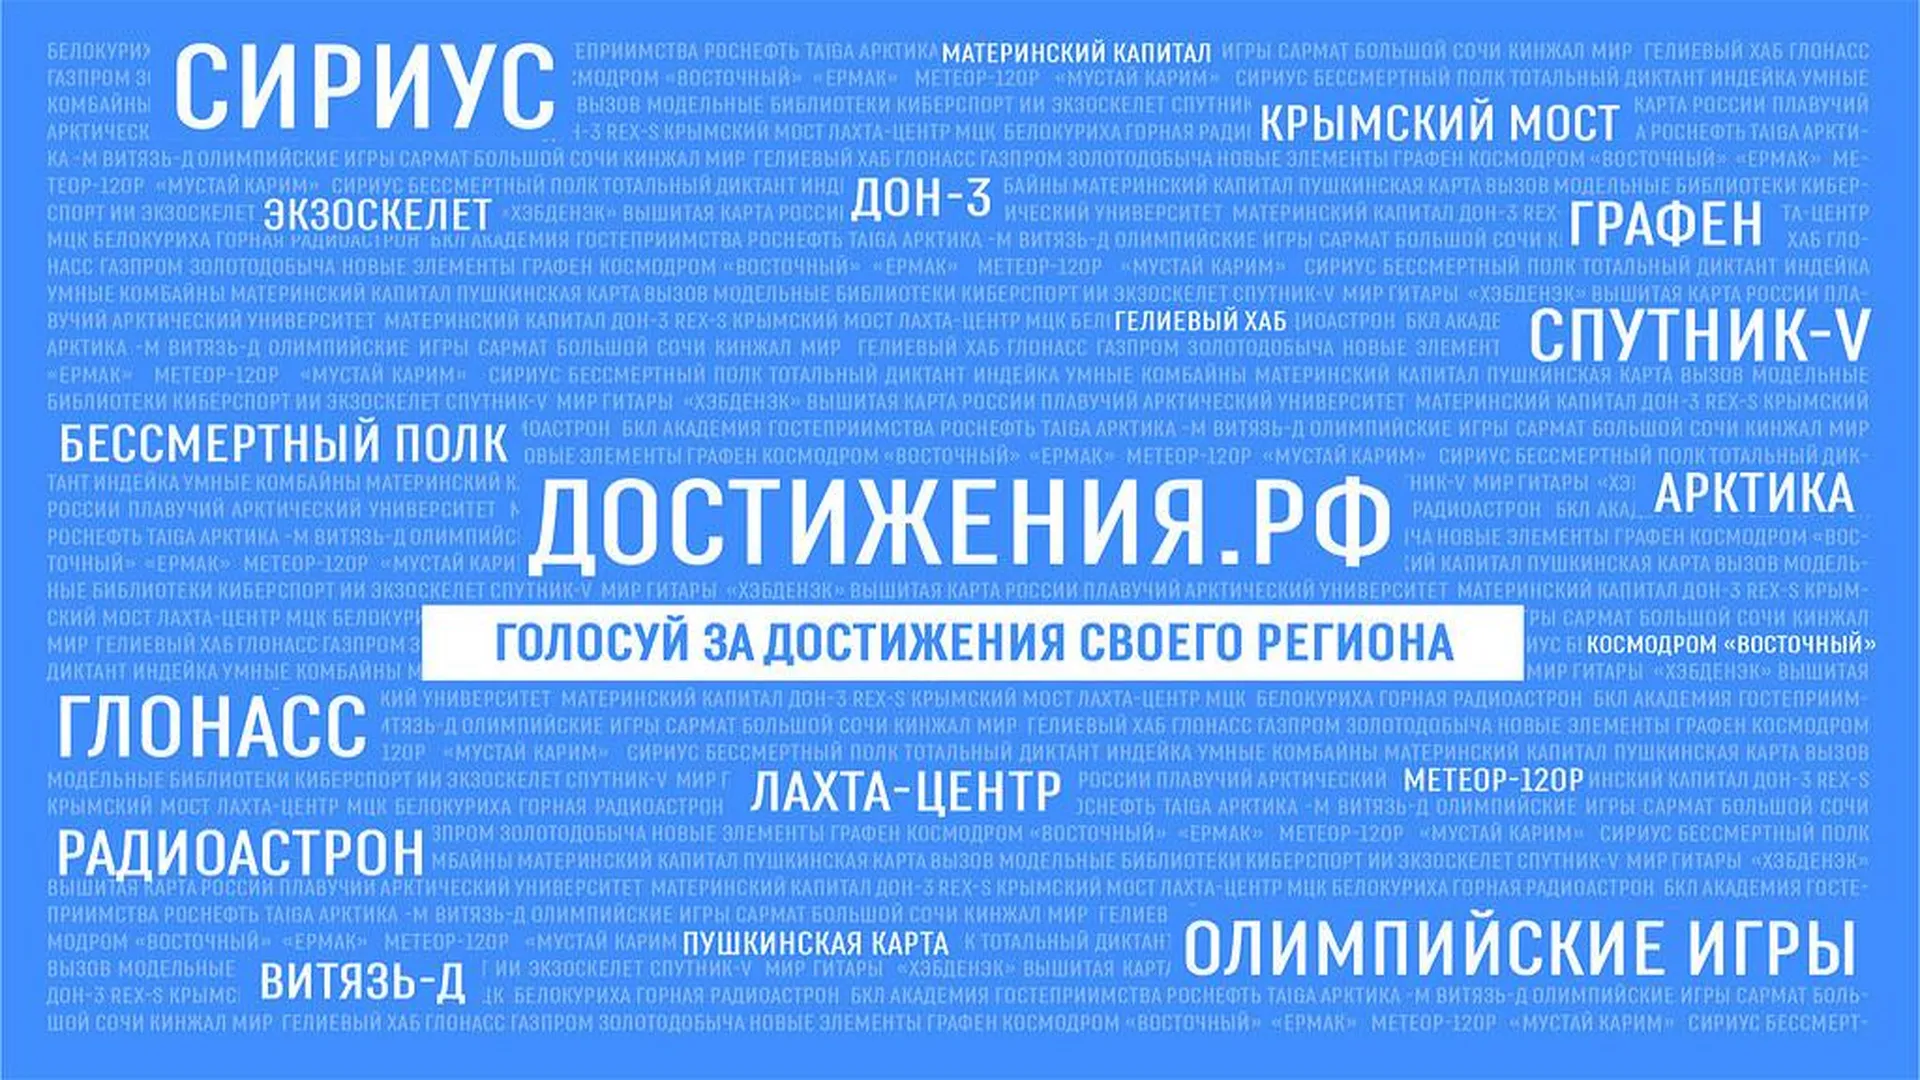 Жители Подмосковья могут отметить успехи региона на сайте Достижения.РФ